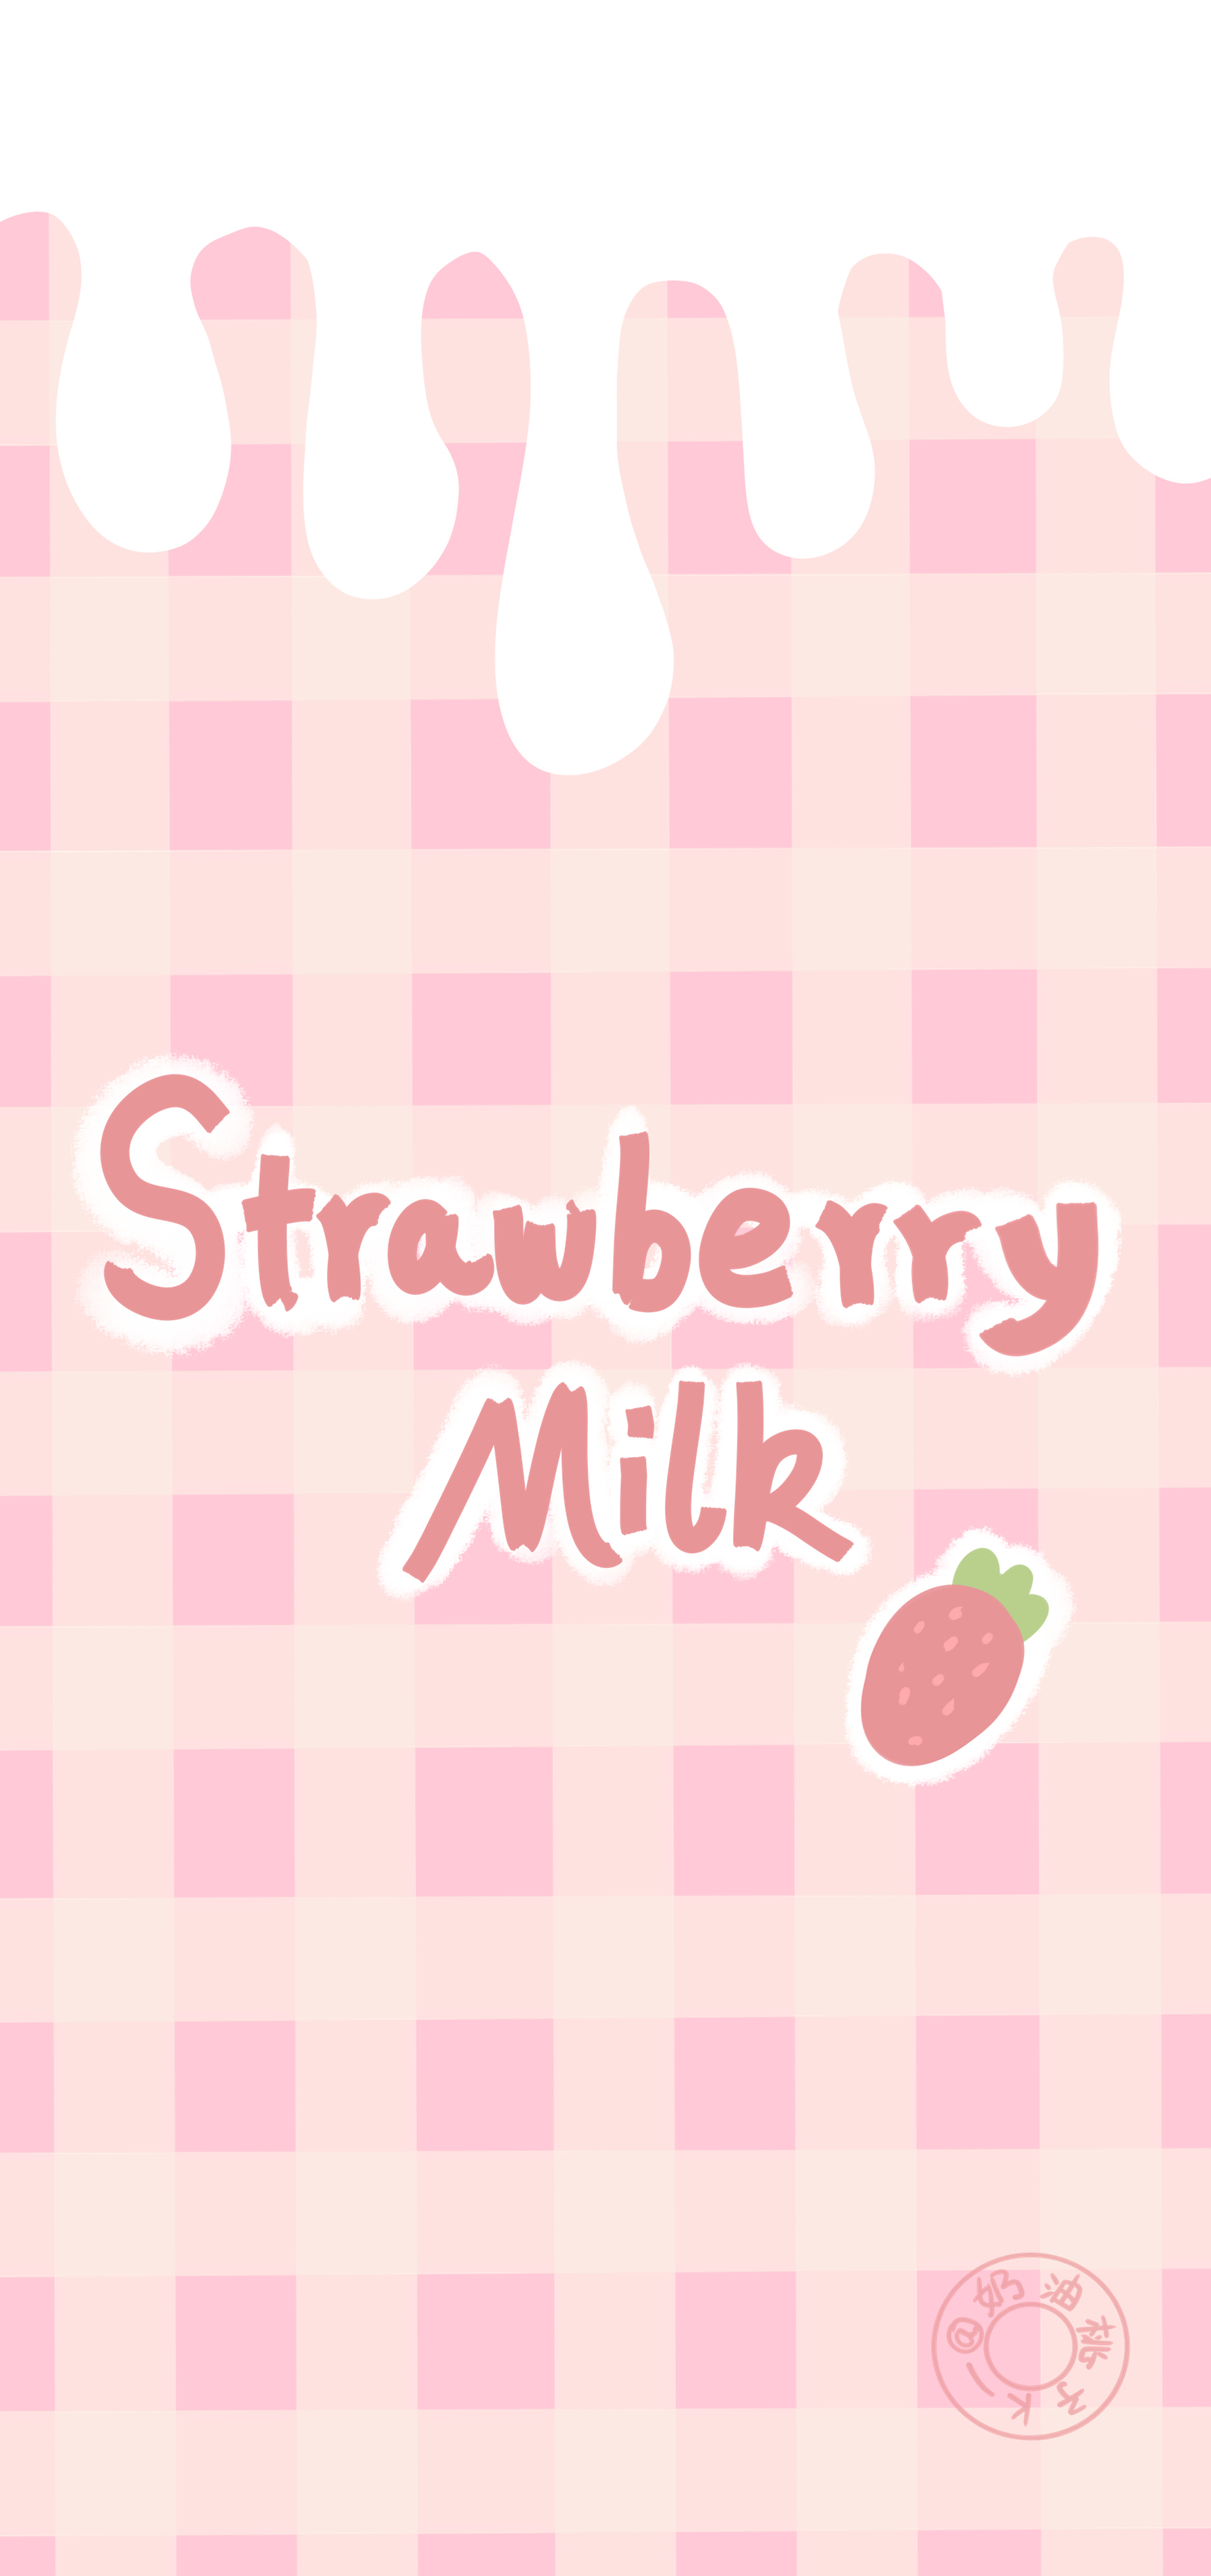 可爱草莓粉色壁纸 cr:奶油桃子k_ #手机壁纸##少女心##插画壁纸##可爱